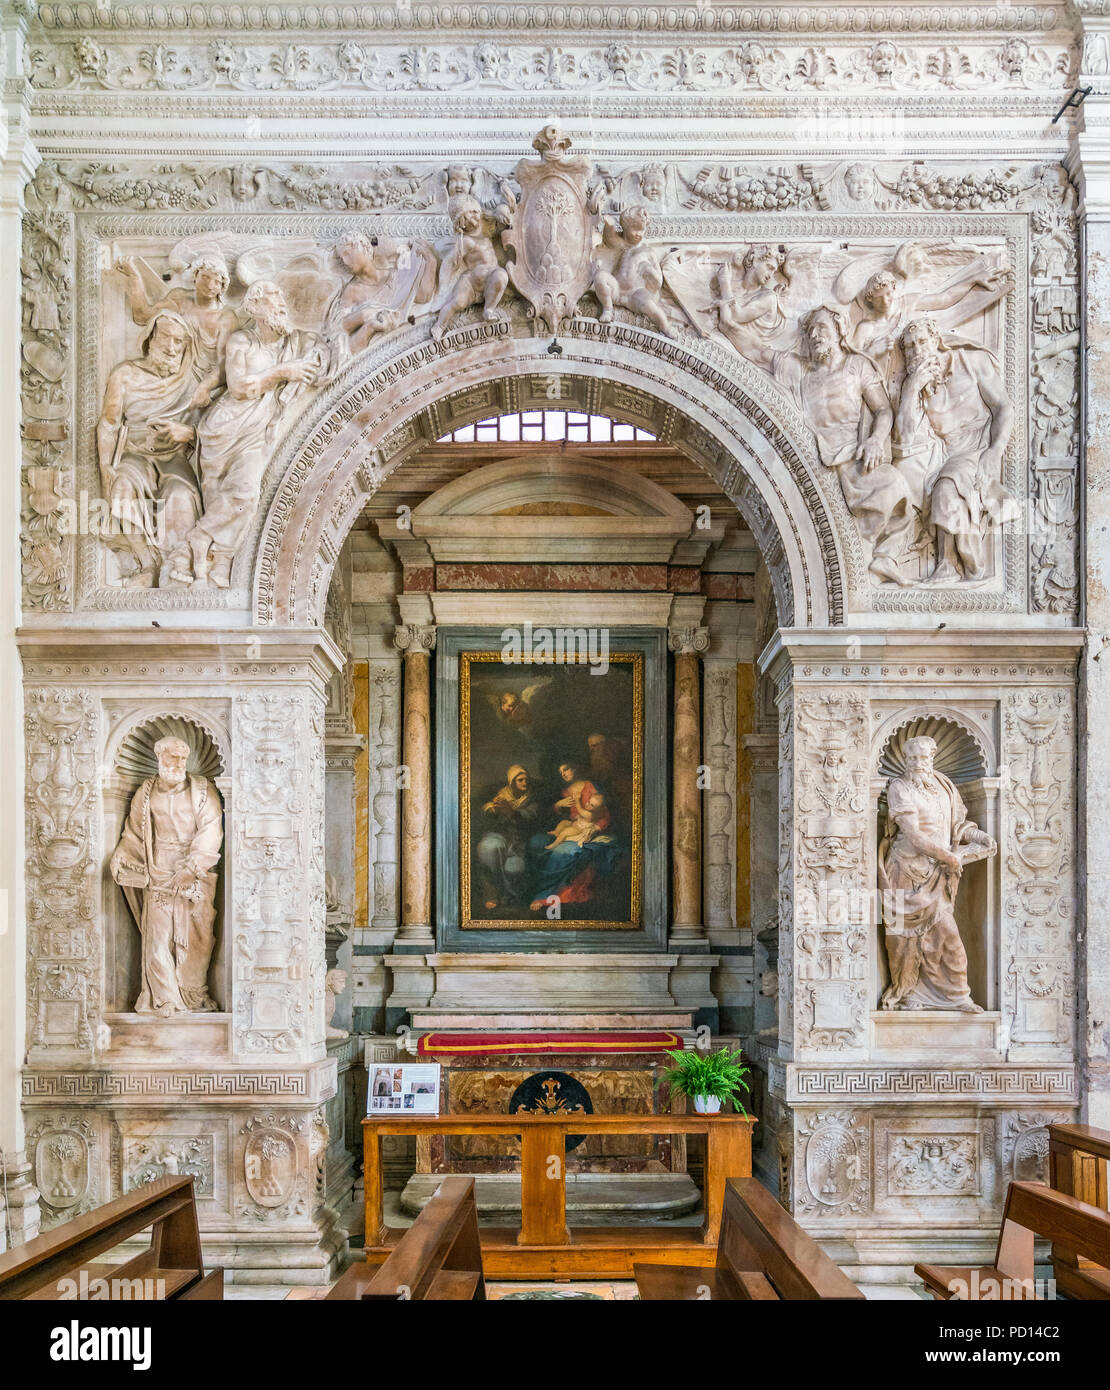 The Cesi Chapel by Antonio da Sangallo il Giovane, in the Church of Santa Maria della Pace in Rome, Italy. Stock Photo